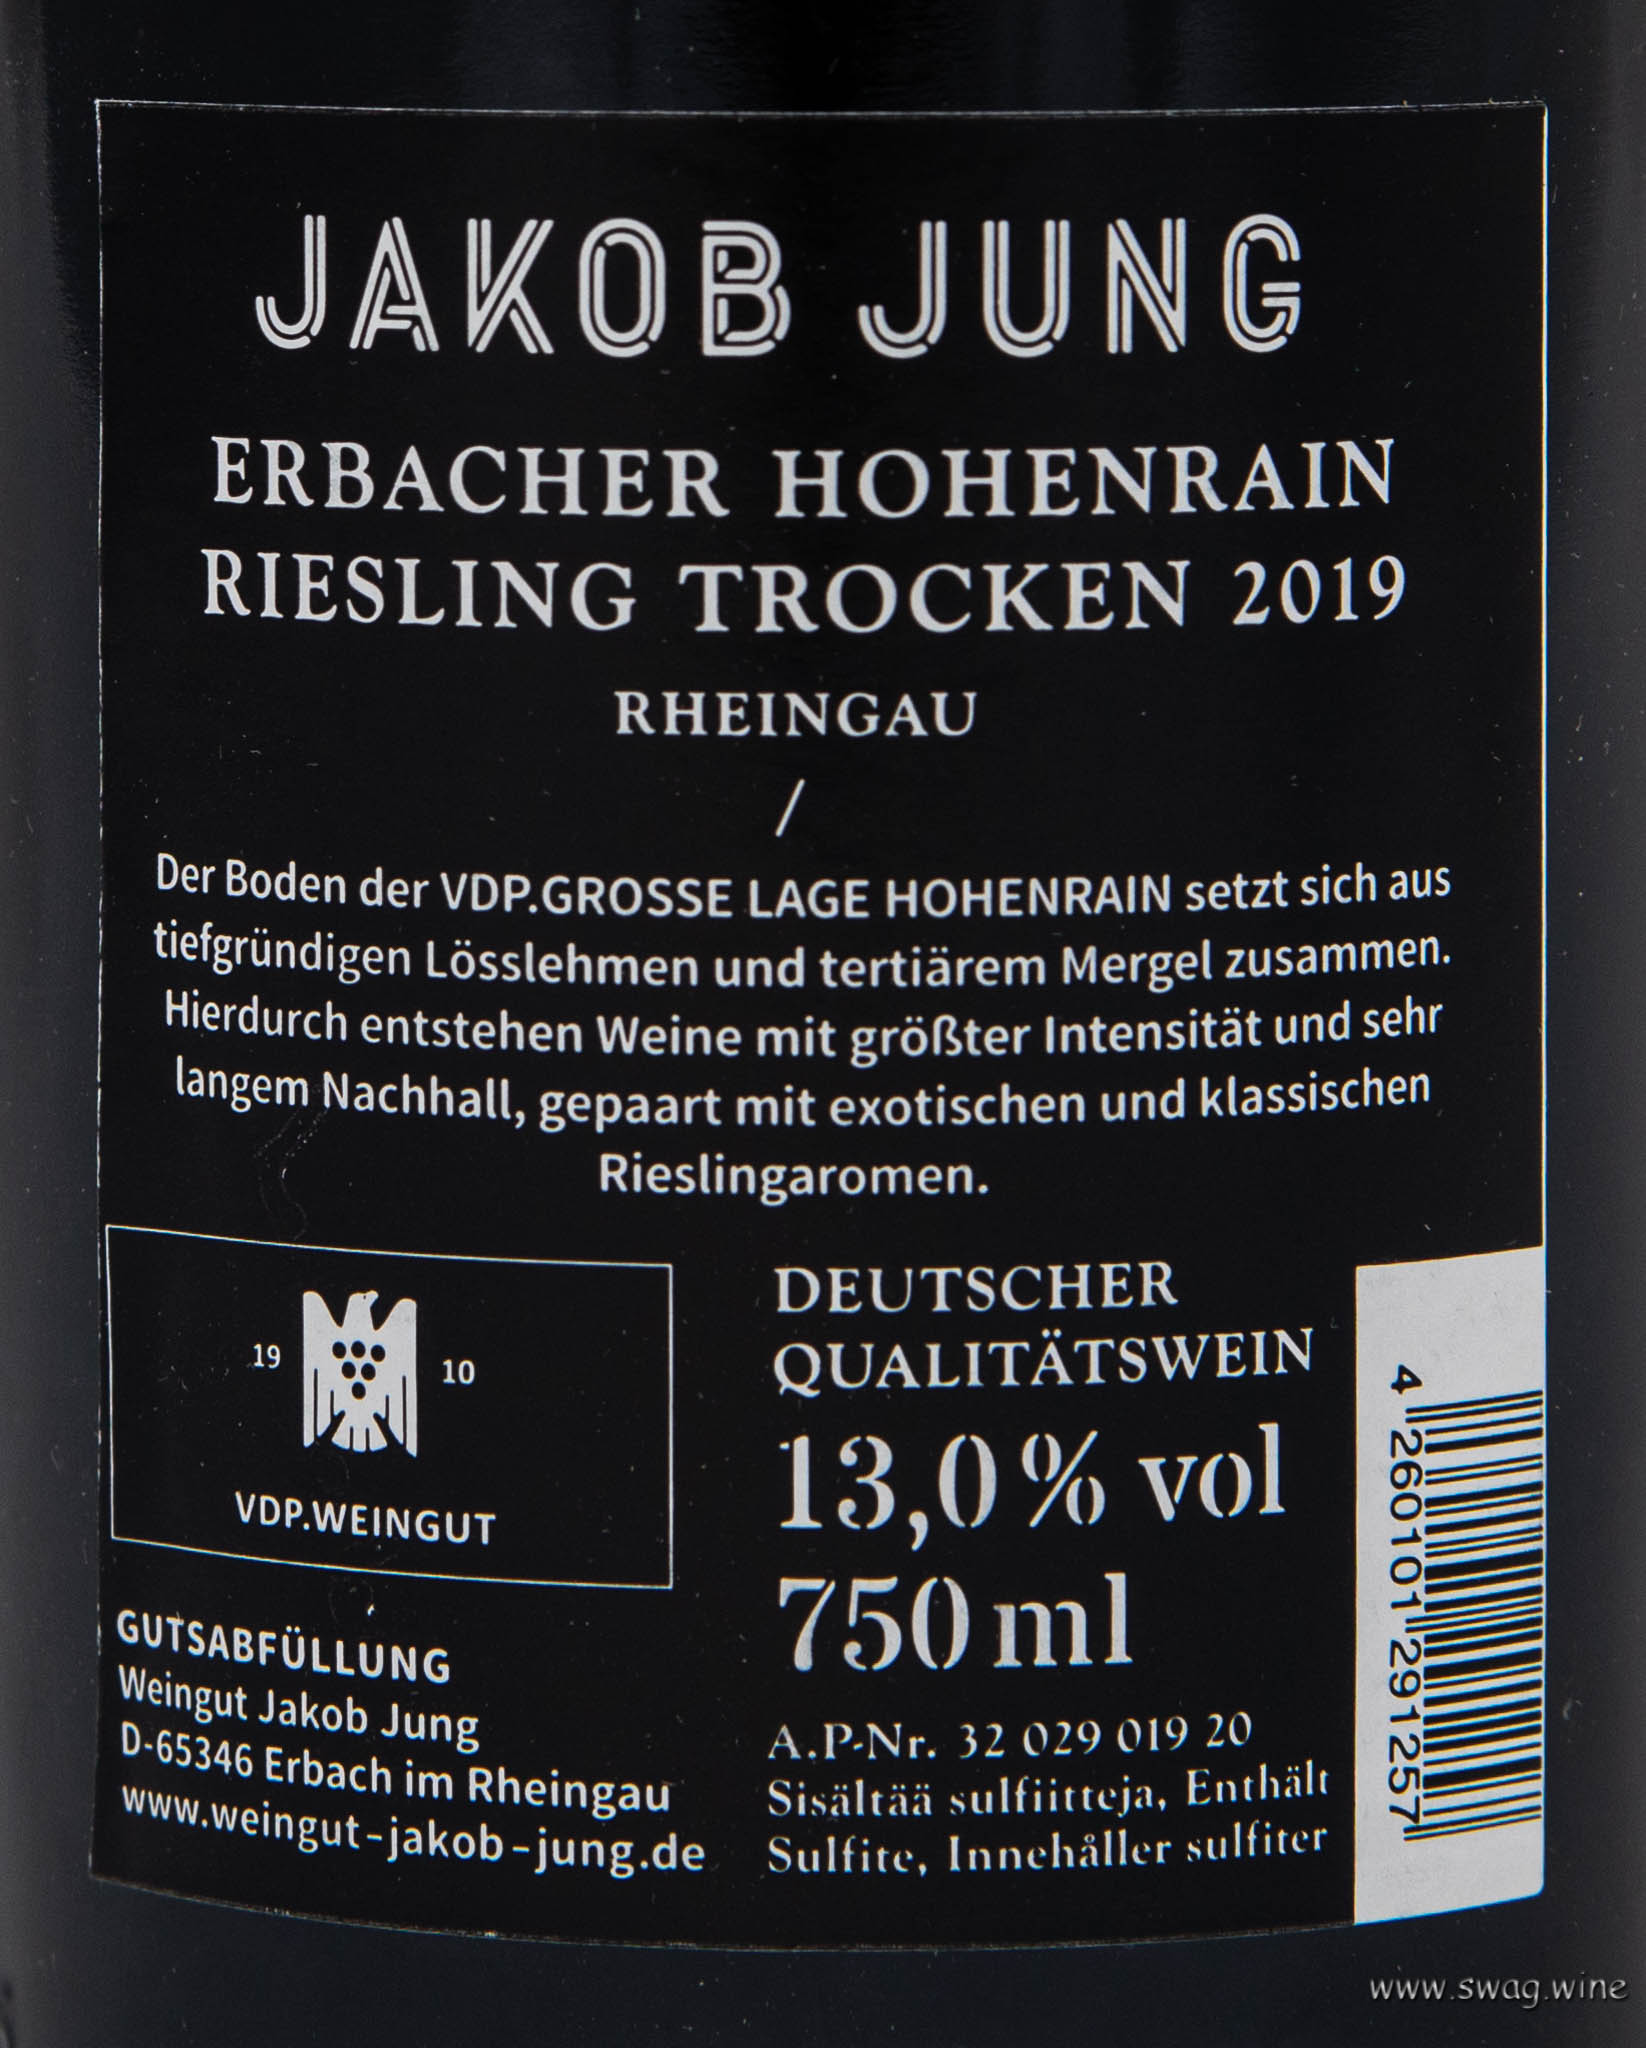 Erbacher Hohenrain Riesling GG Weingut Jakob Jung Rheingau Poker Wein Karten Full House Royal Flush Ass Eberbach VDP Winzer Alexander Johannes